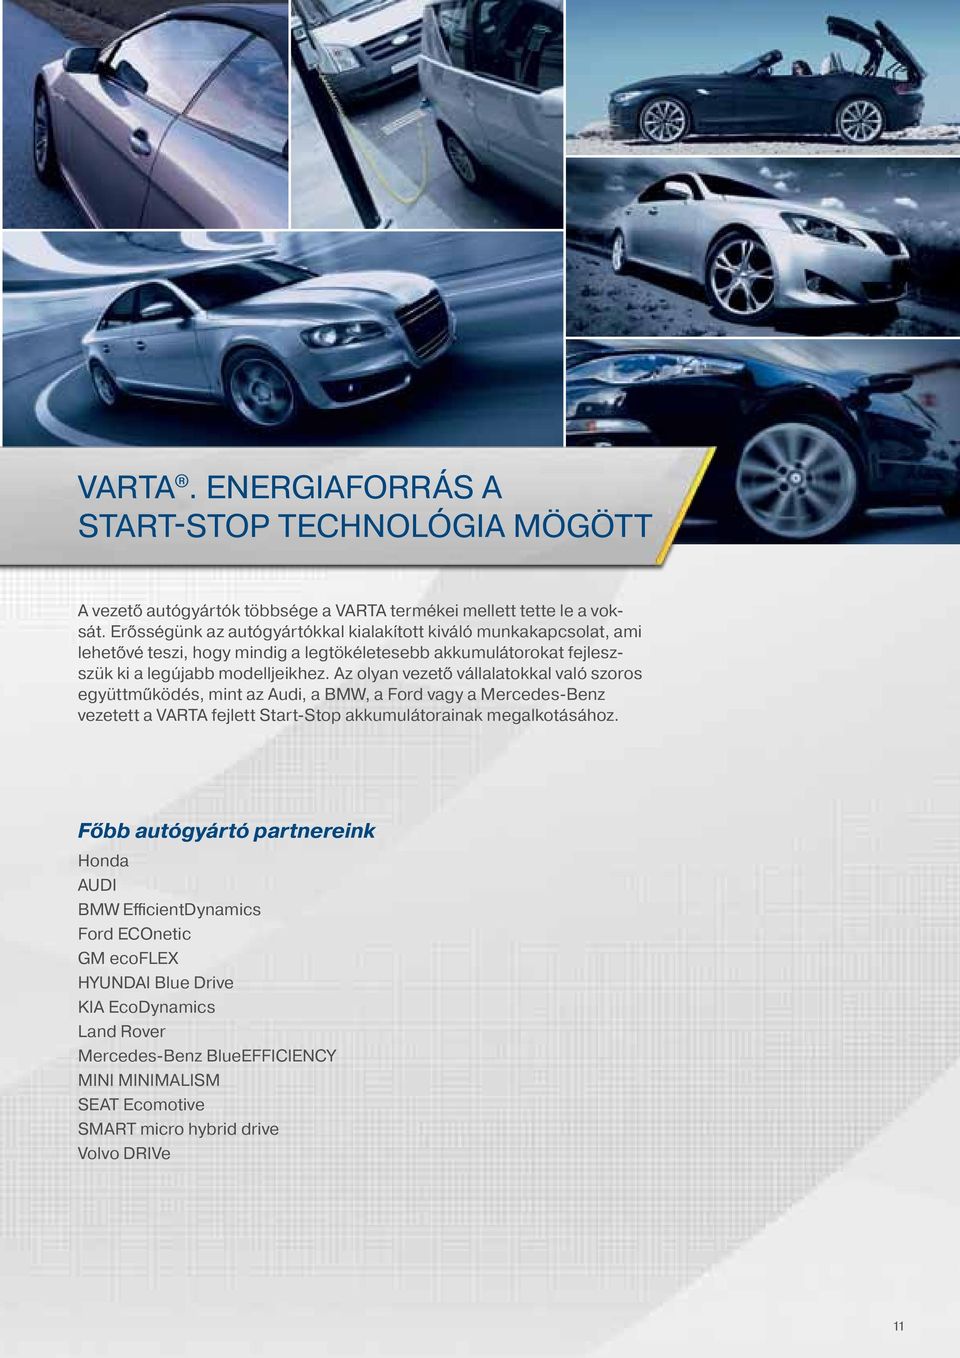 Az olyan vezető vállalatokkal való szoros együttműködés, mint az Audi, a BMW, a Ford vagy a Mercedes-Benz vezetett a VARTA fejlett Start-Stop akkumulátorainak megalkotásához.